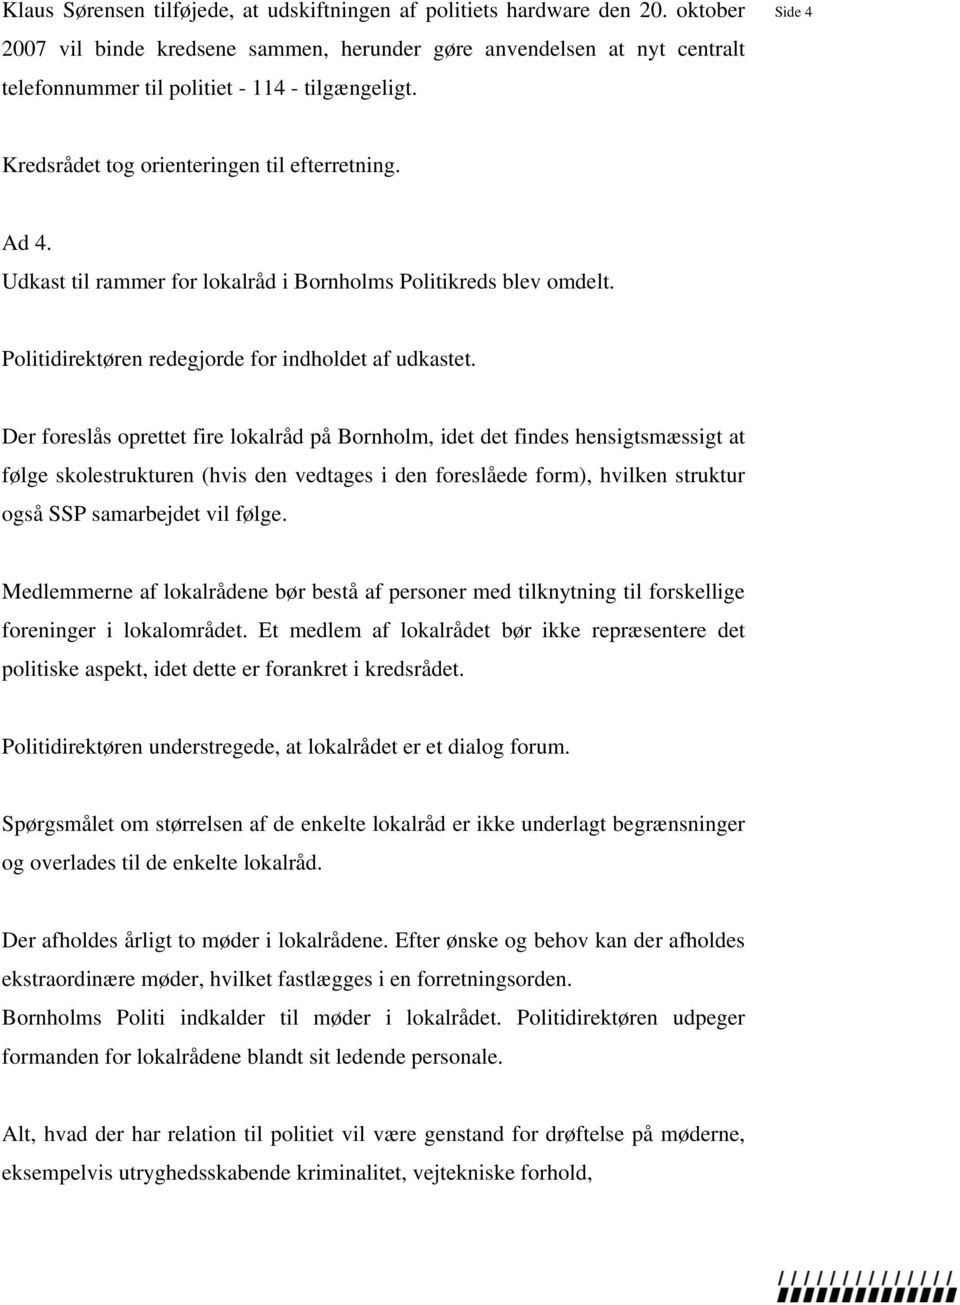 Udkast til rammer for lokalråd i Bornholms Politikreds blev omdelt. Politidirektøren redegjorde for indholdet af udkastet.